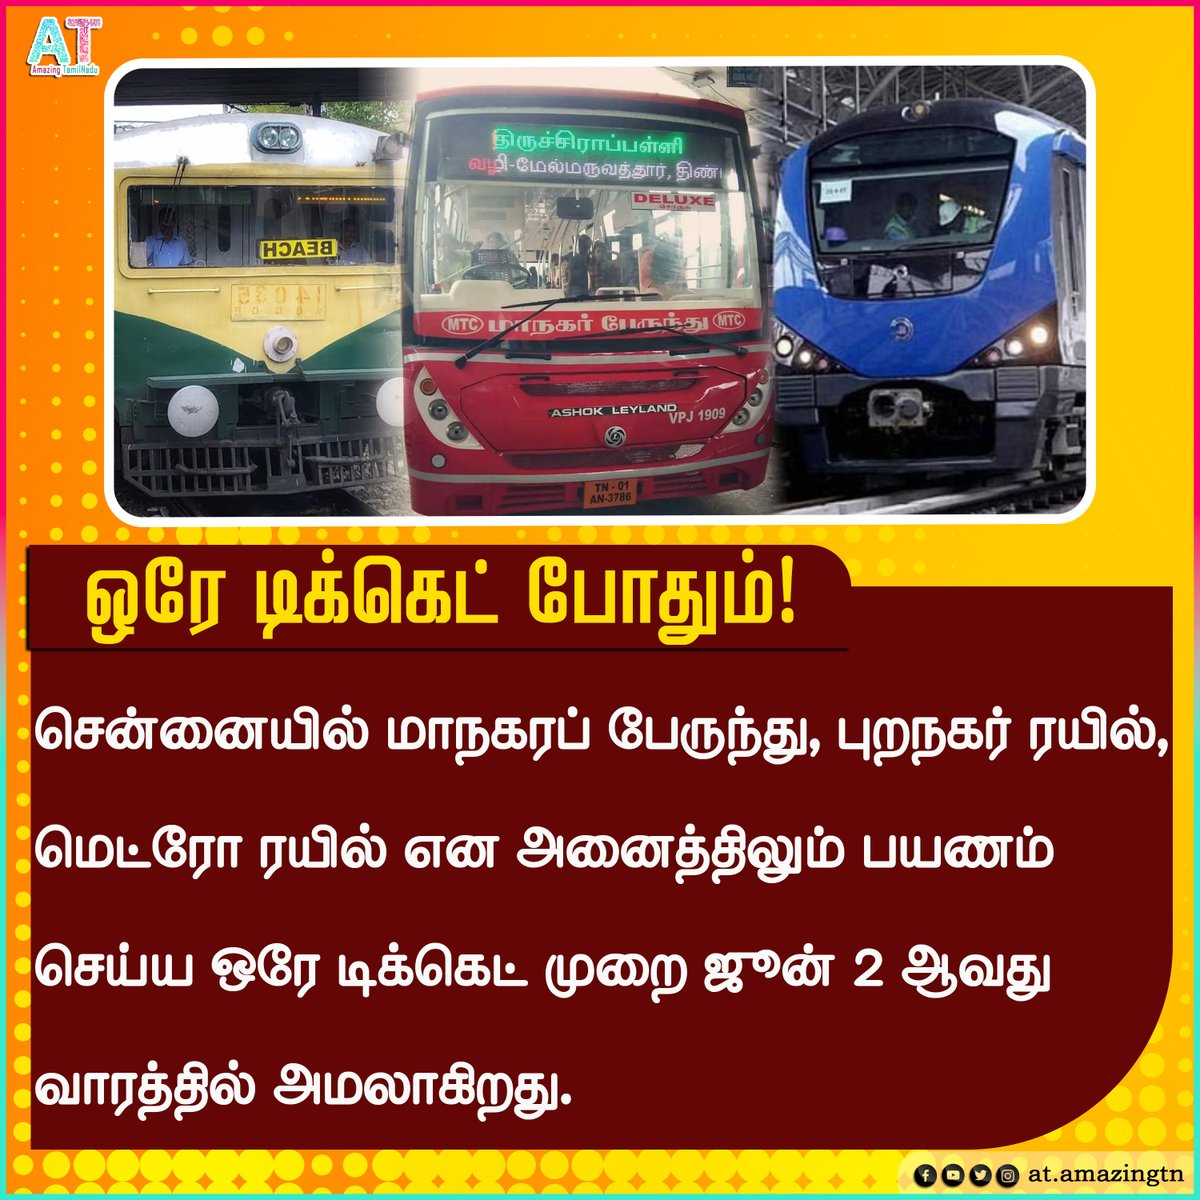 ஒரே டிக்கெட் மூலம் பயணிக்கும் நடைமுறை - அமலுக்கு வருவதாக தகவல் 

#CUMTA #MTC #ChennaiMetroRail #ChennaiLocaltrain #MTCBus #Chennai #Metro